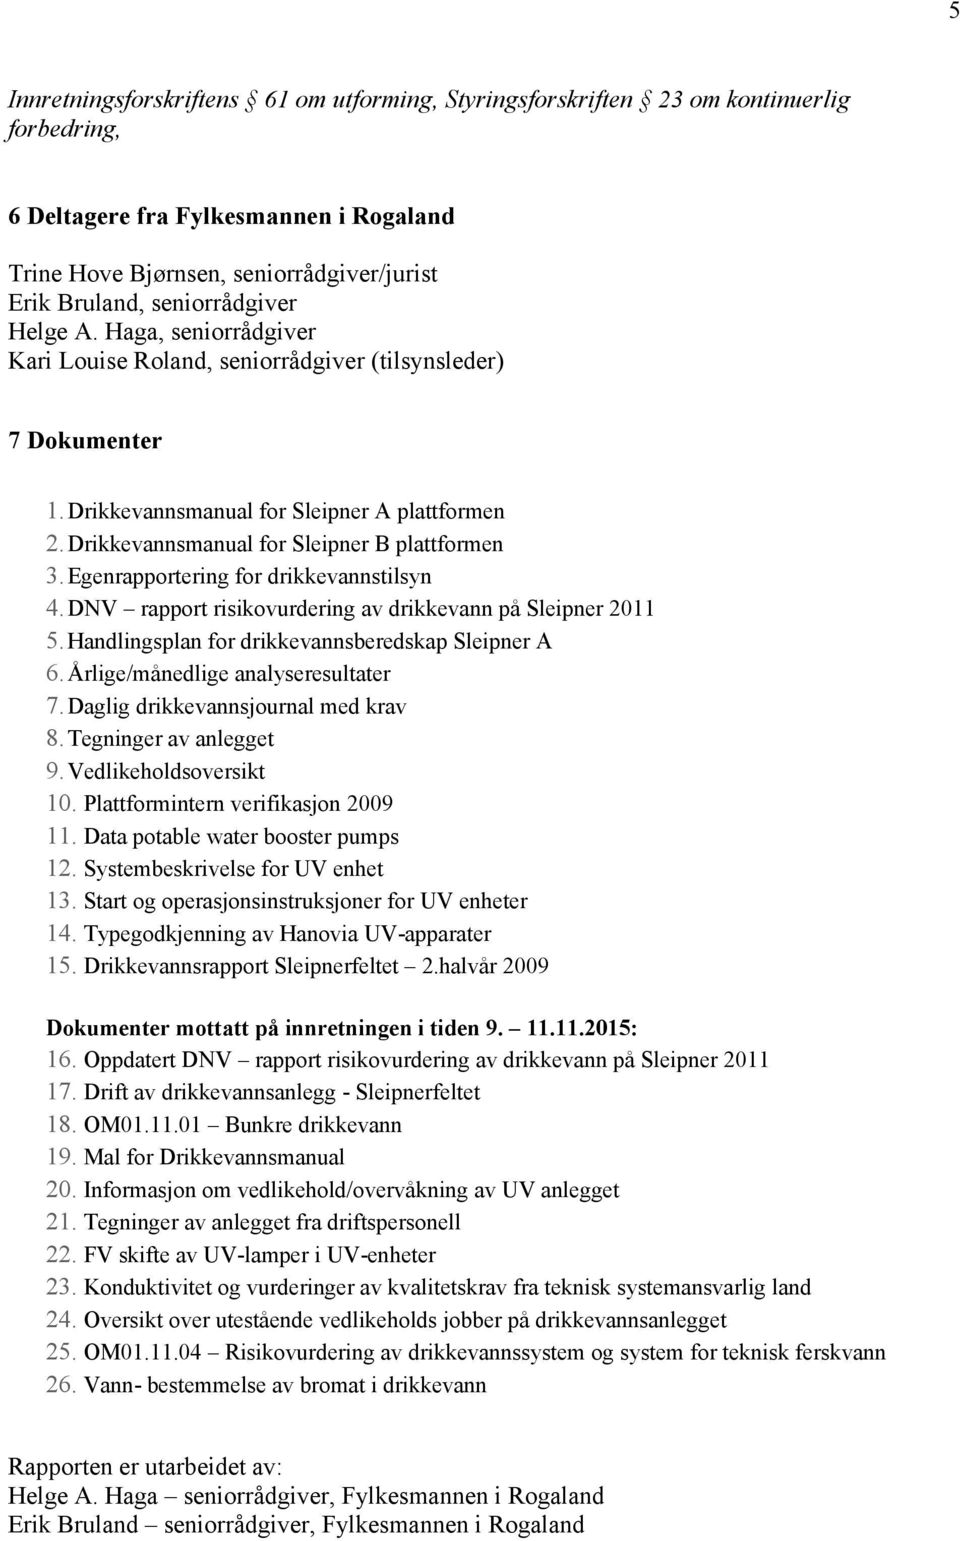 Drikkevannsmanual for Sleipner B plattformen 3.Egenrapportering for drikkevannstilsyn 4.DNV rapport risikovurdering av drikkevann på Sleipner 2011 5.